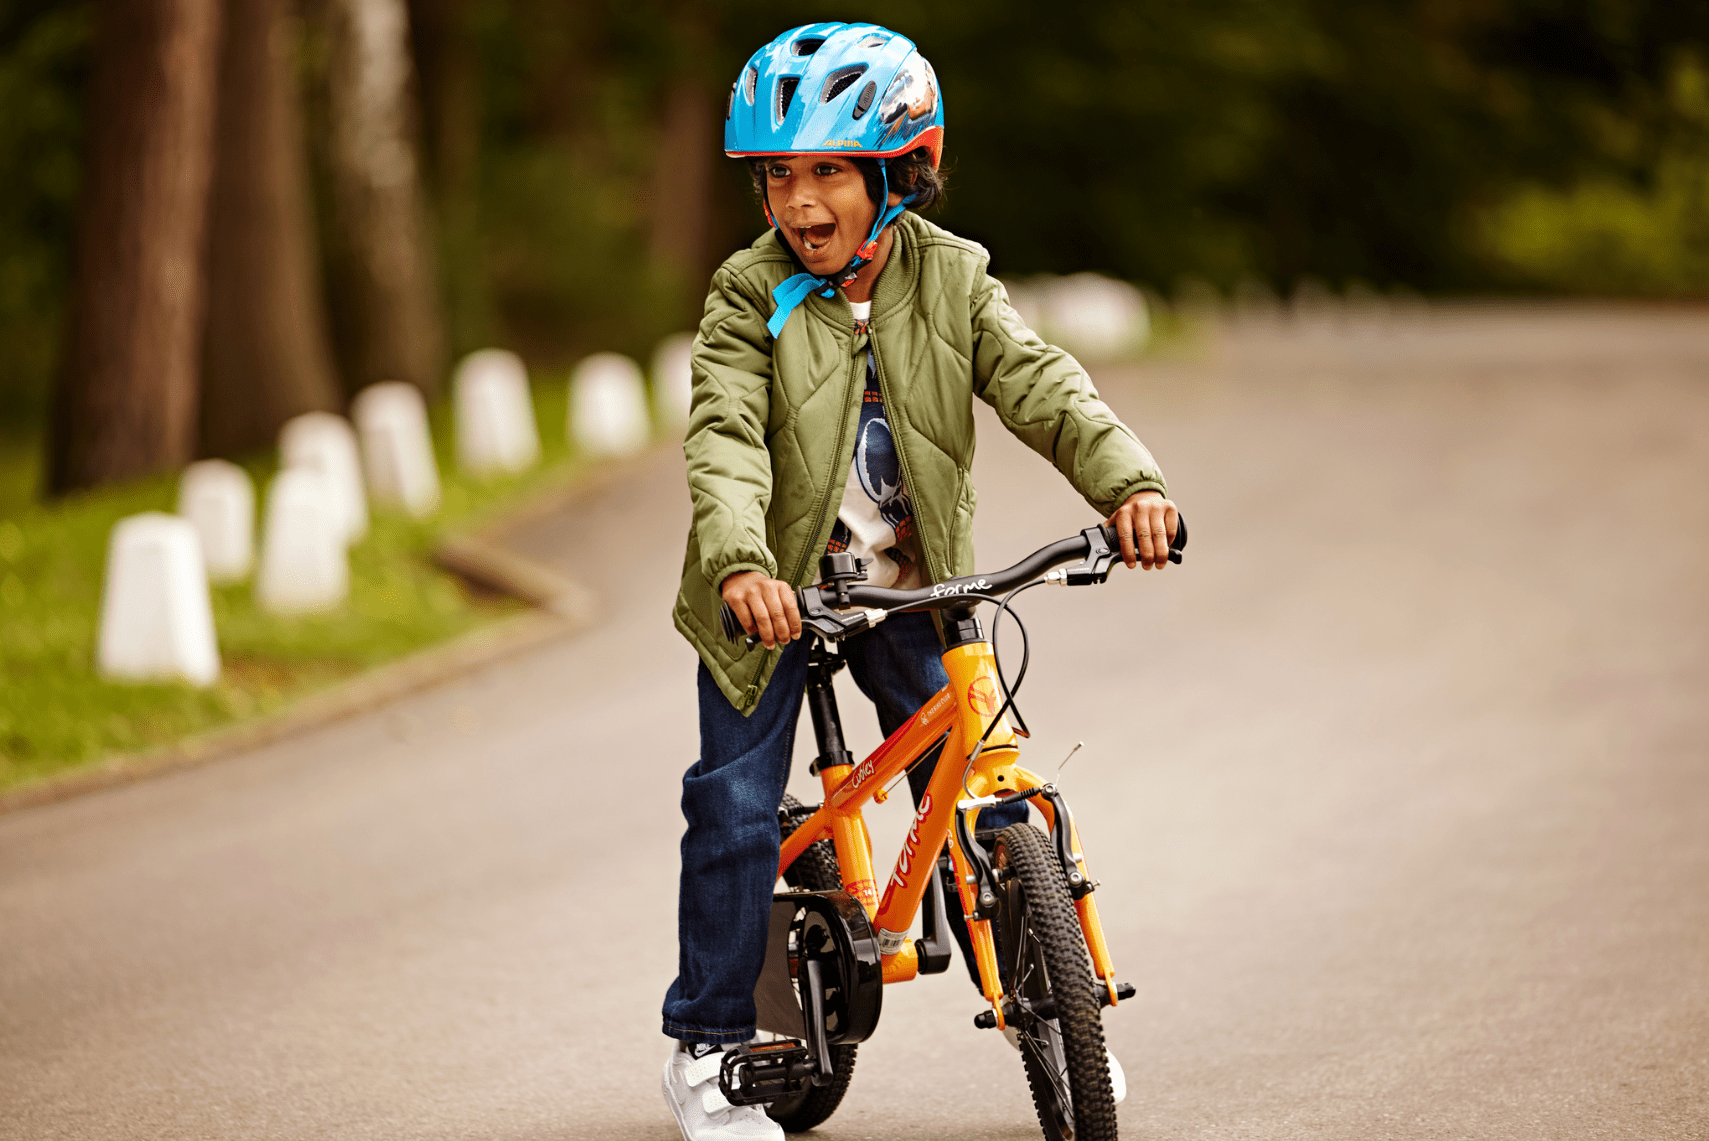 Child in road on a bike - Bike Club